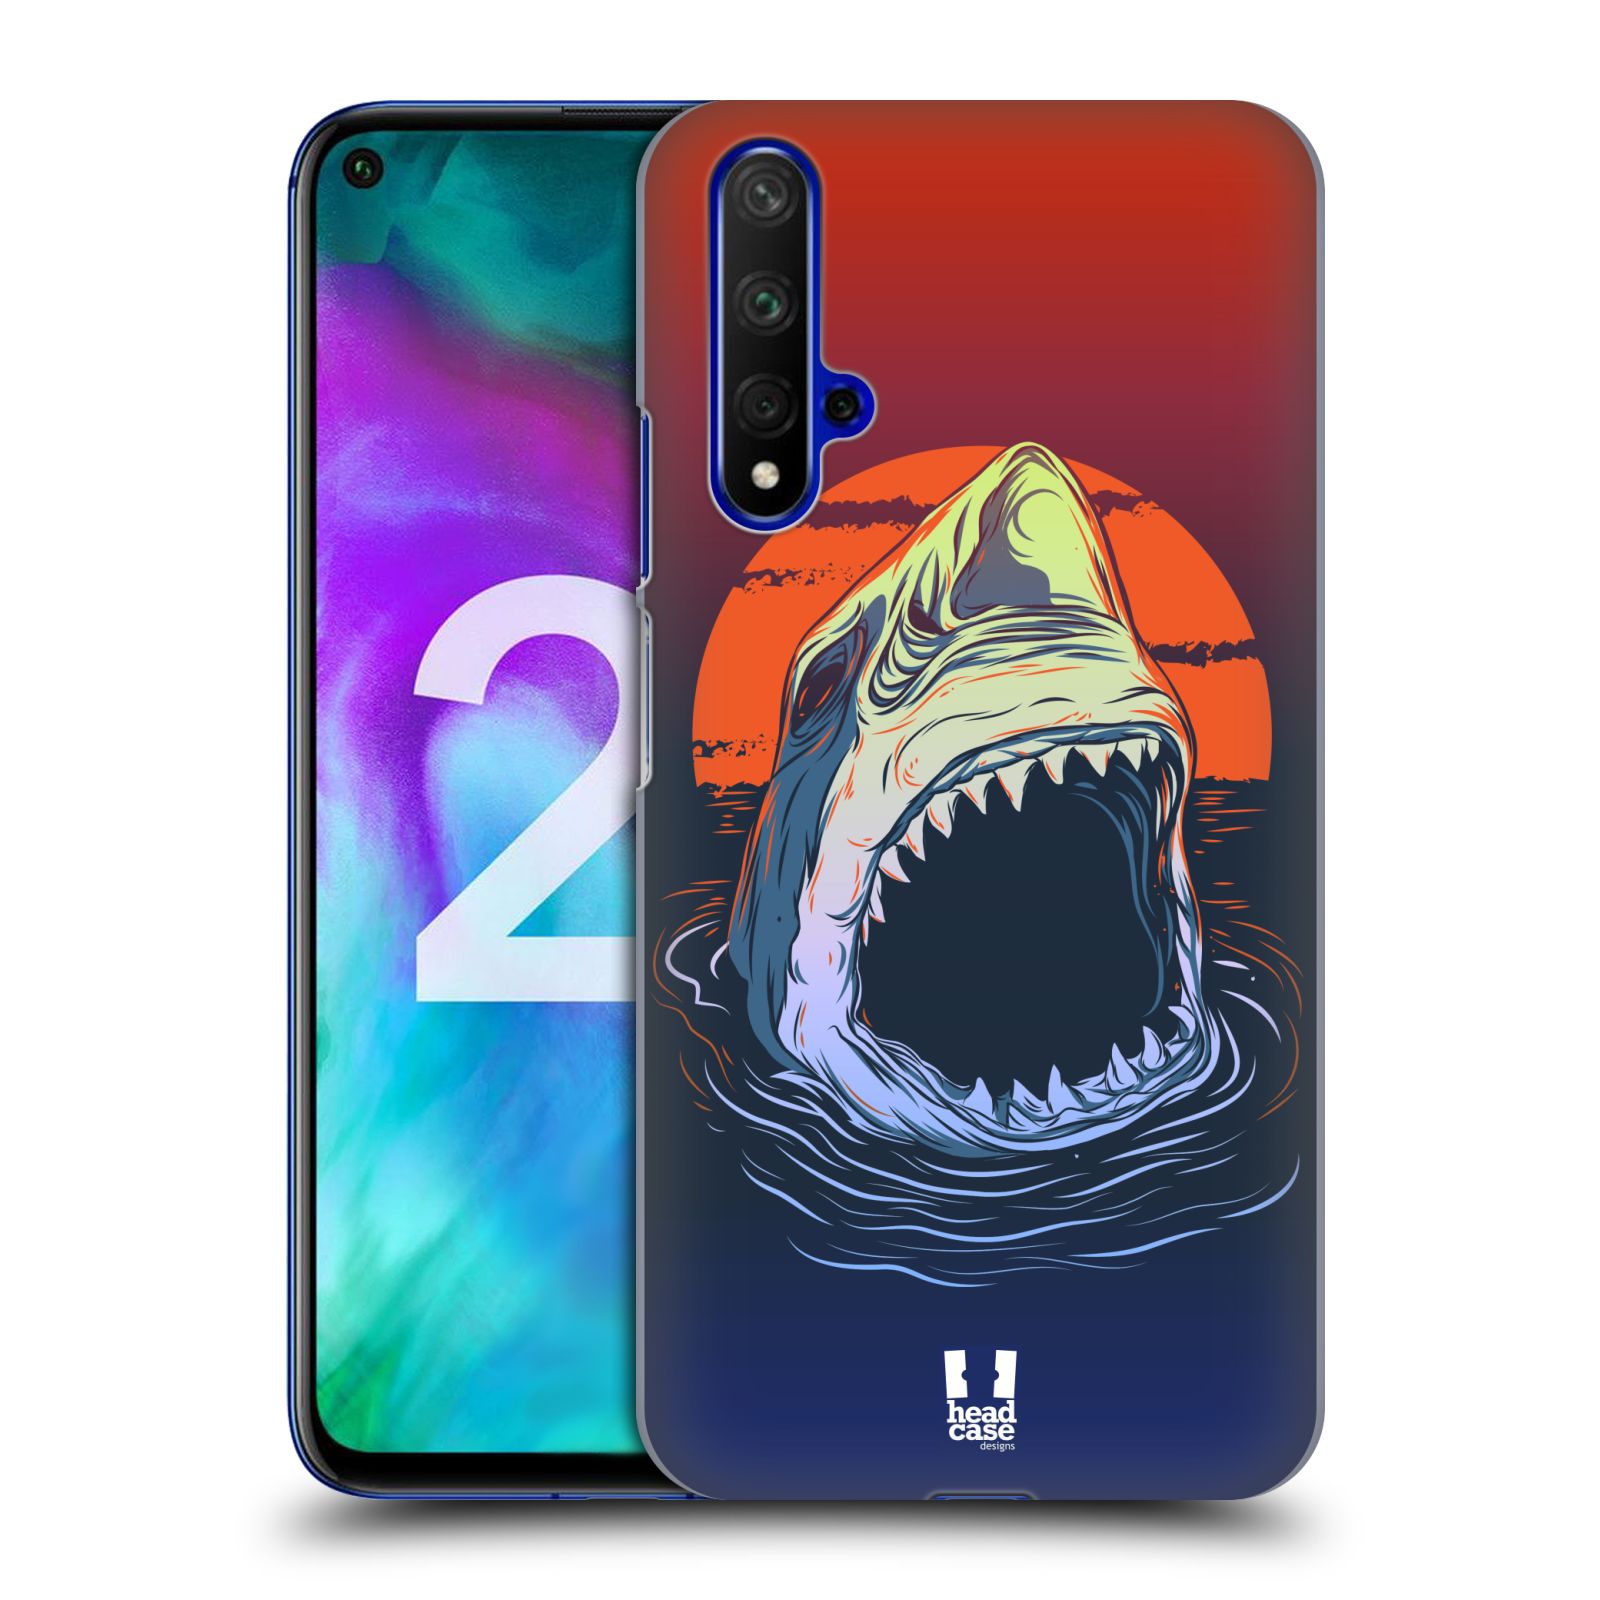 Pouzdro na mobil Honor 20 - HEAD CASE - vzor mořská monstra žralok